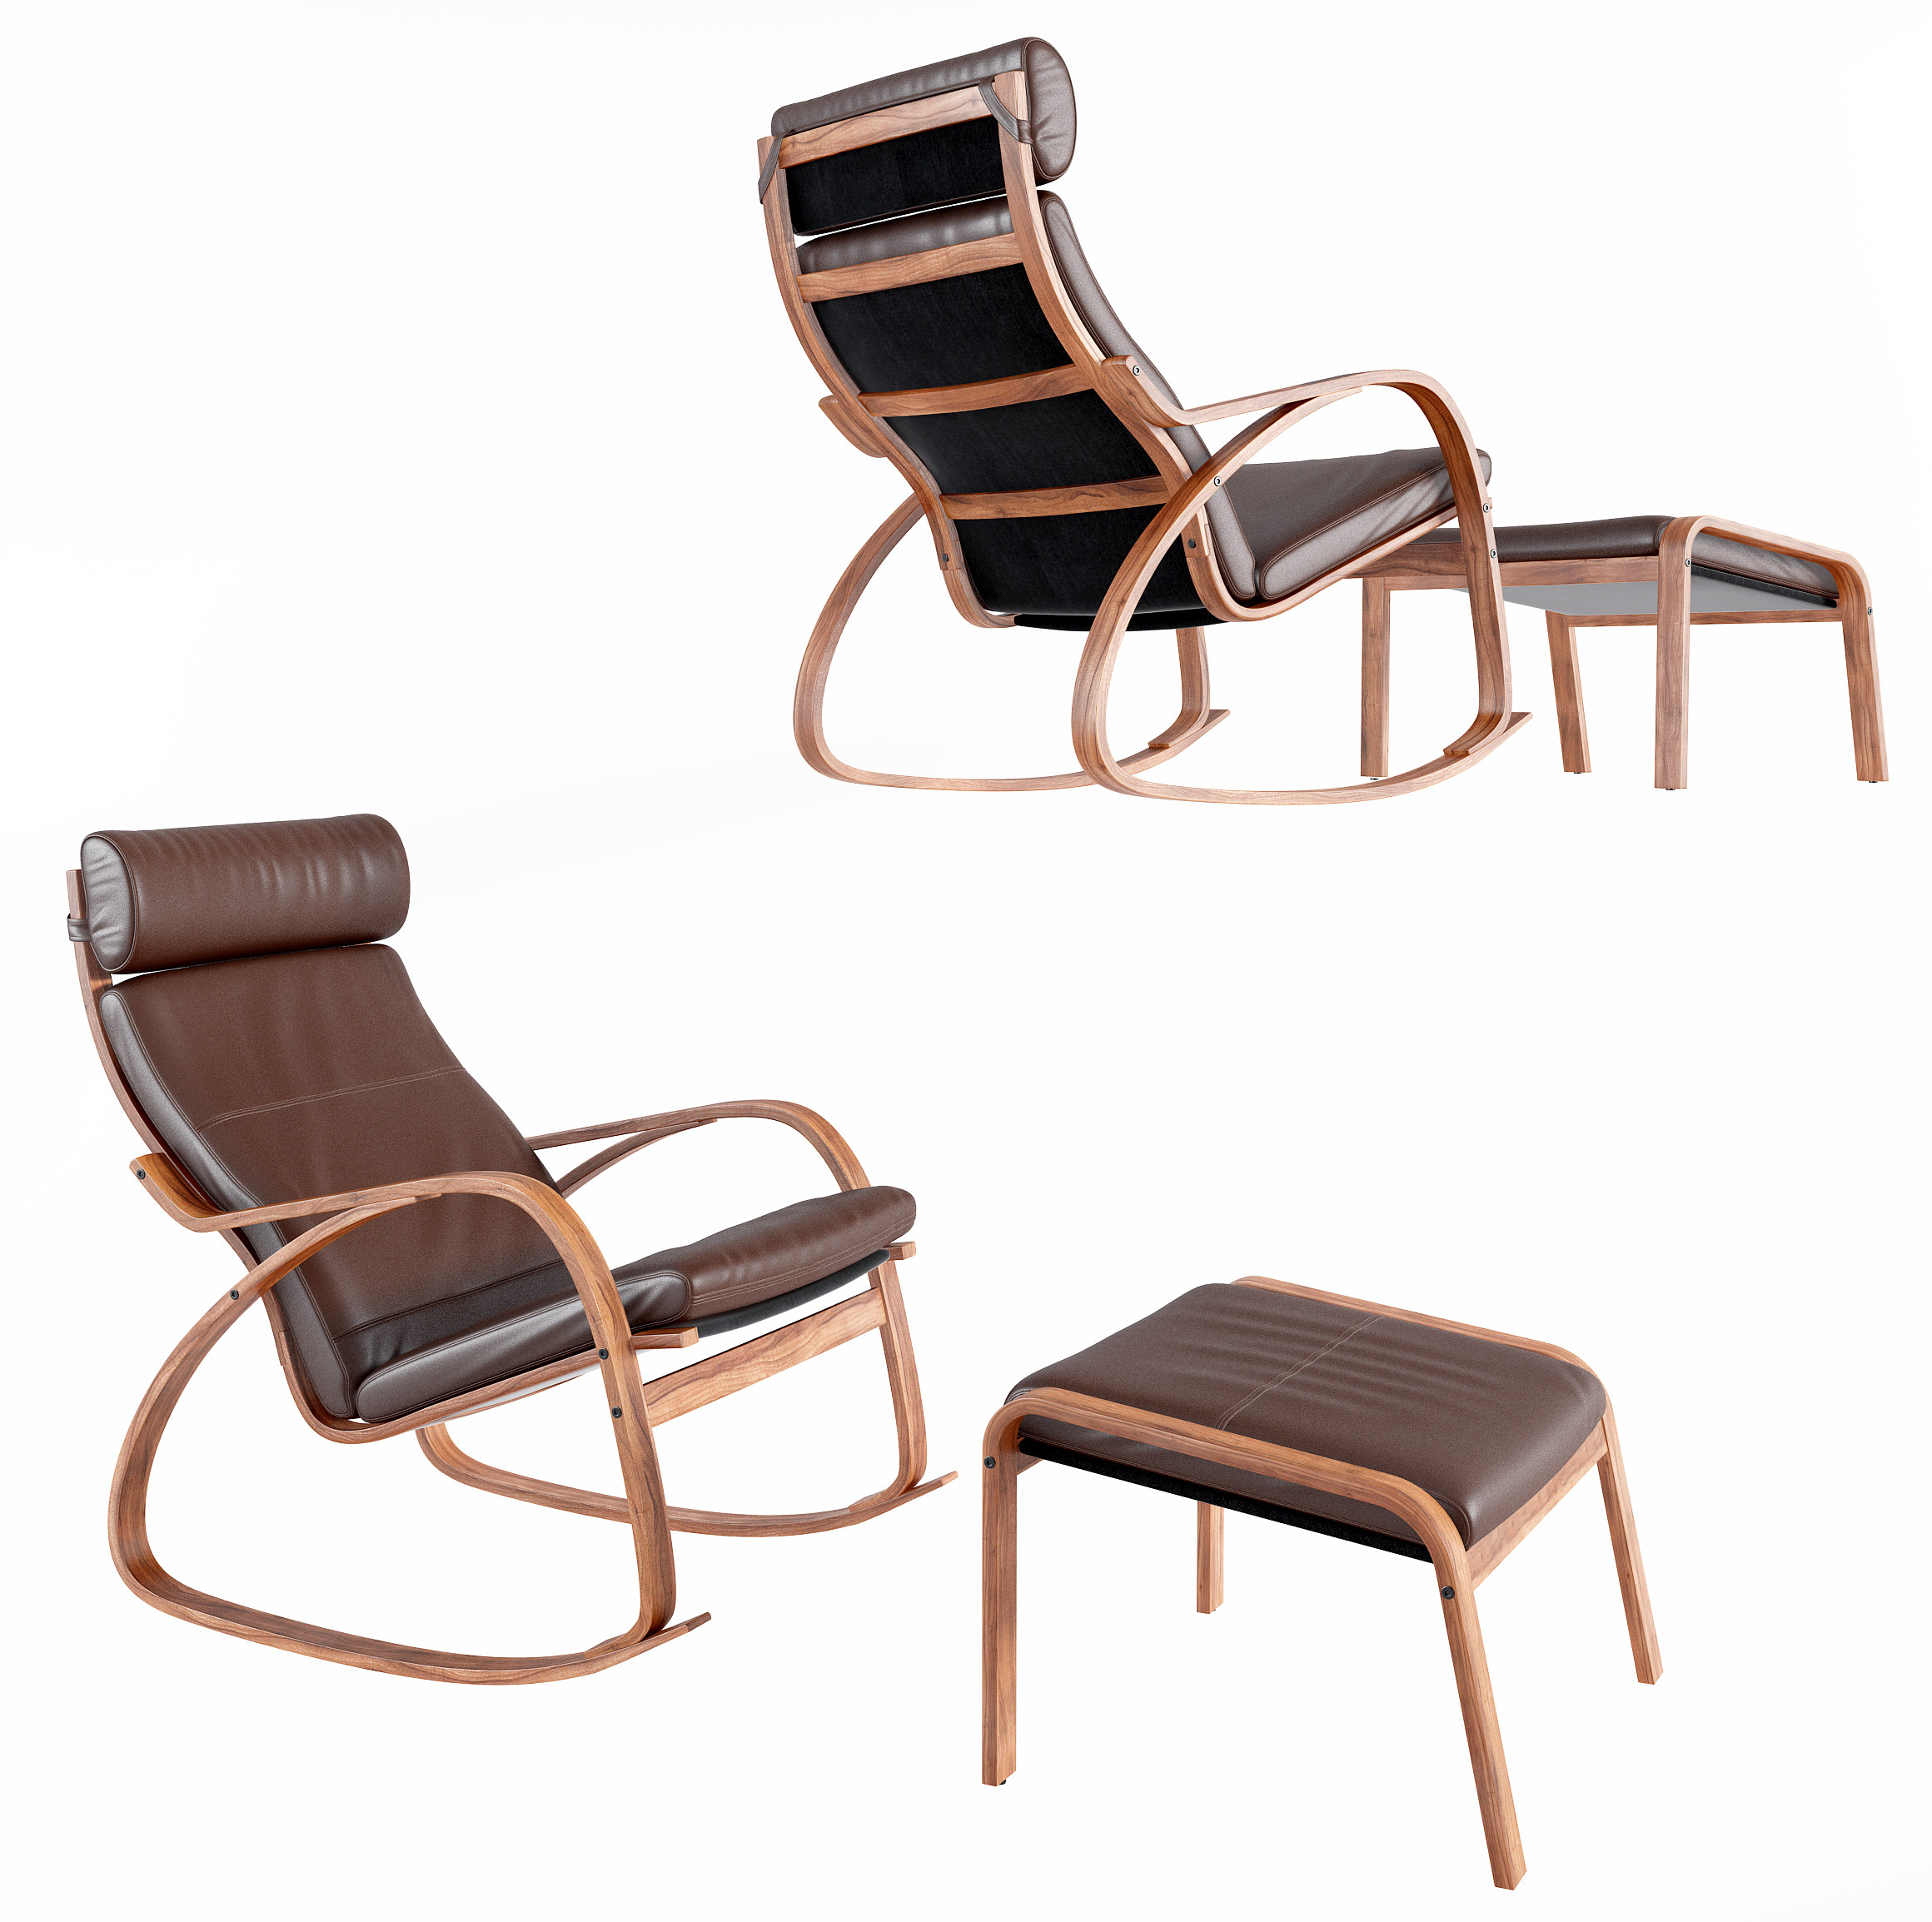 现代躺椅3d模型下载